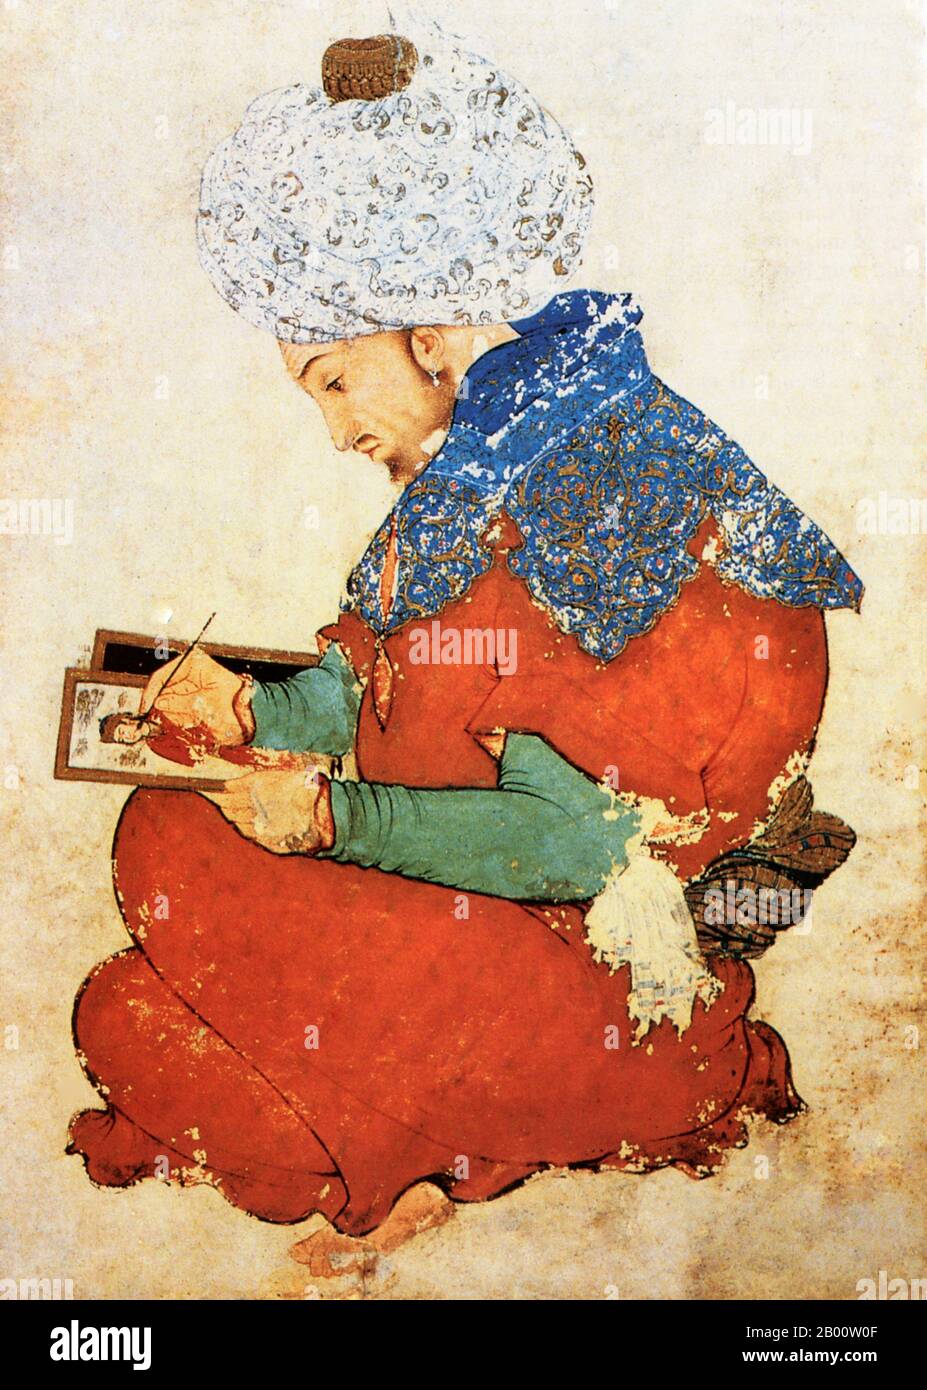 Irán/Kuwait: «Retrato de un pintor persa», una pintura de Moghal India de 1600 a 1625 CE. Artista desconocido. En agosto de 1990, esta famosa pintura fue una de las 20,000 piezas de arte saqueadas del Museo Nacional de Kuwait y dar al-Athis al-Islamiyya (Casa de Antigüedades Islámicas) cuando las fuerzas iraquíes invadieron Kuwait. La pintura y otras 16,000 piezas de las colecciones fueron recuperadas más tarde de Bagdad. Foto de stock